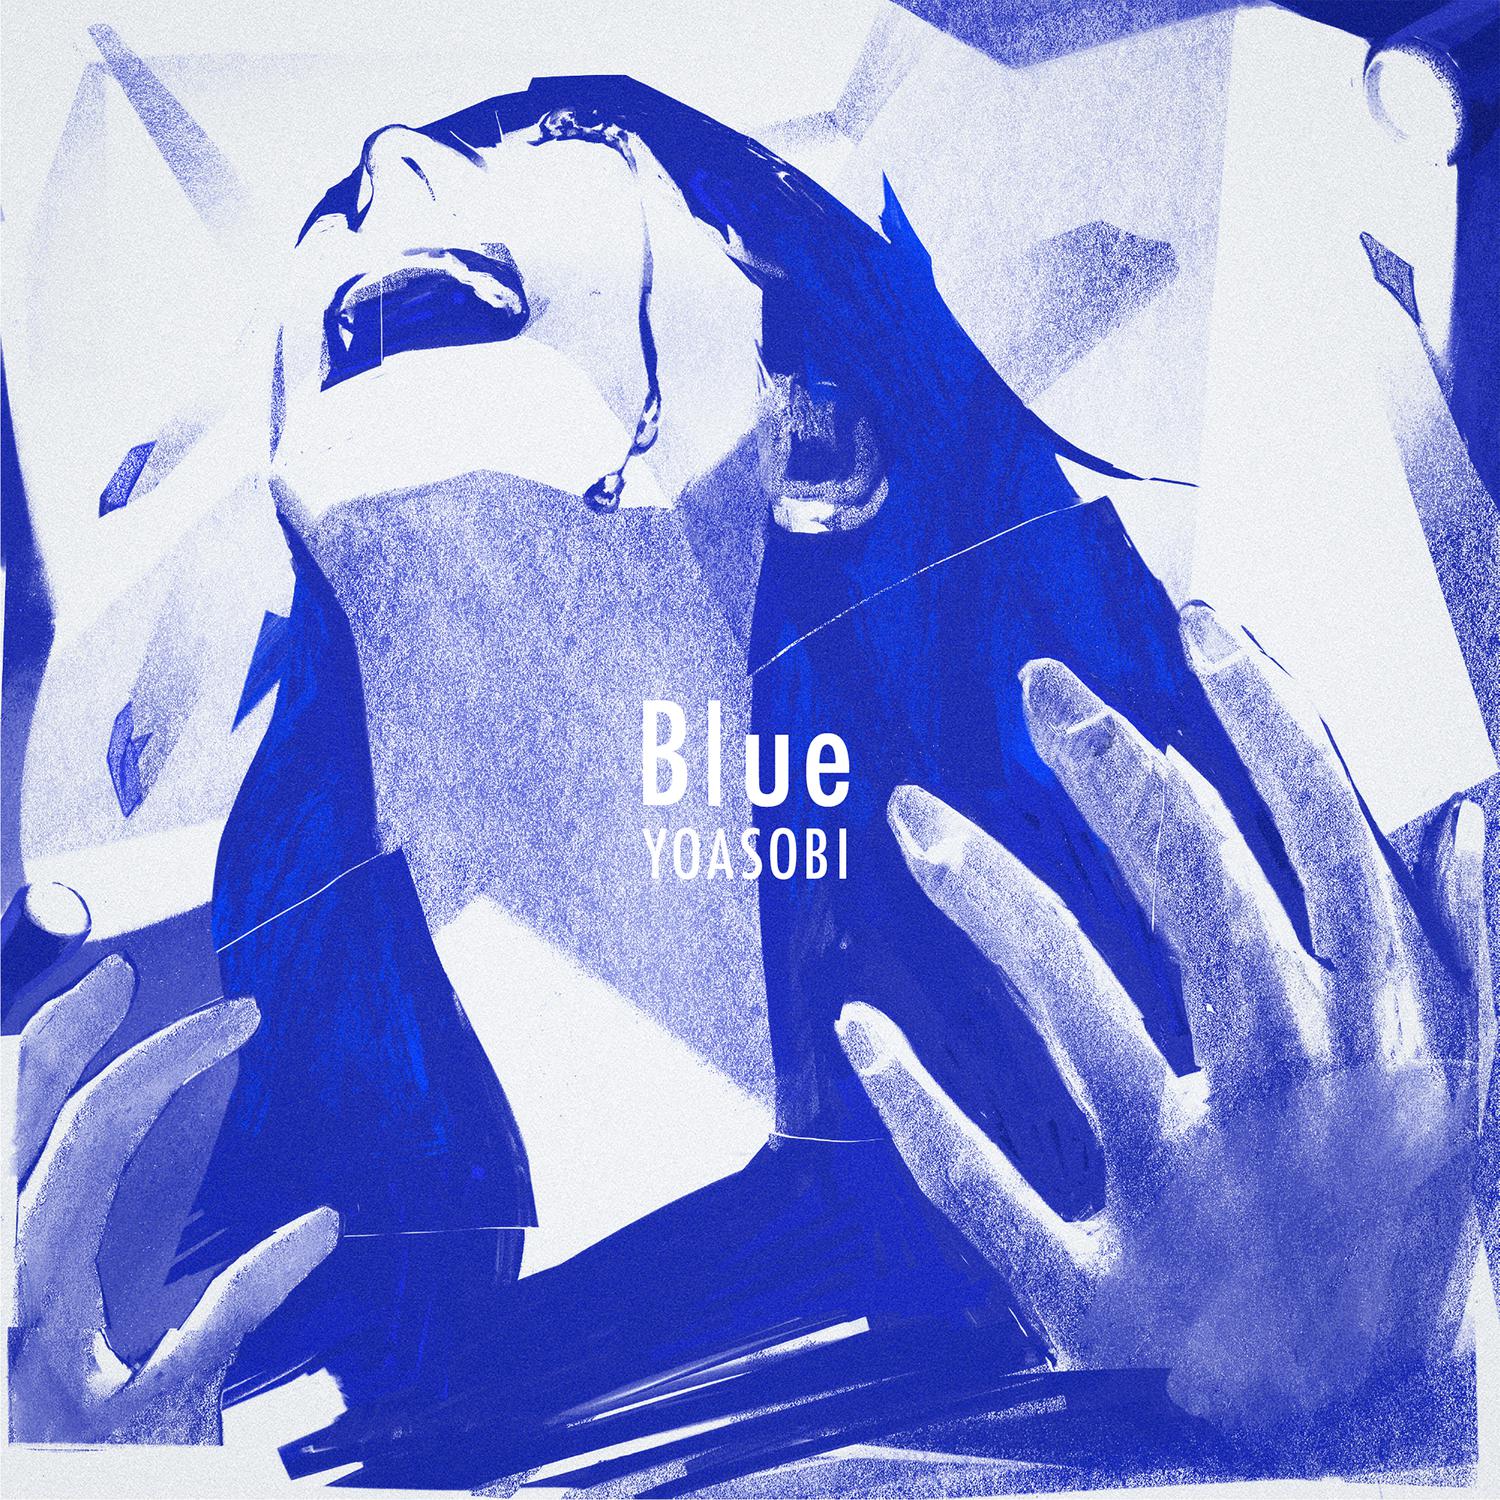 Blue歌词 歌手YOASOBI-专辑Blue-单曲《Blue》LRC歌词下载